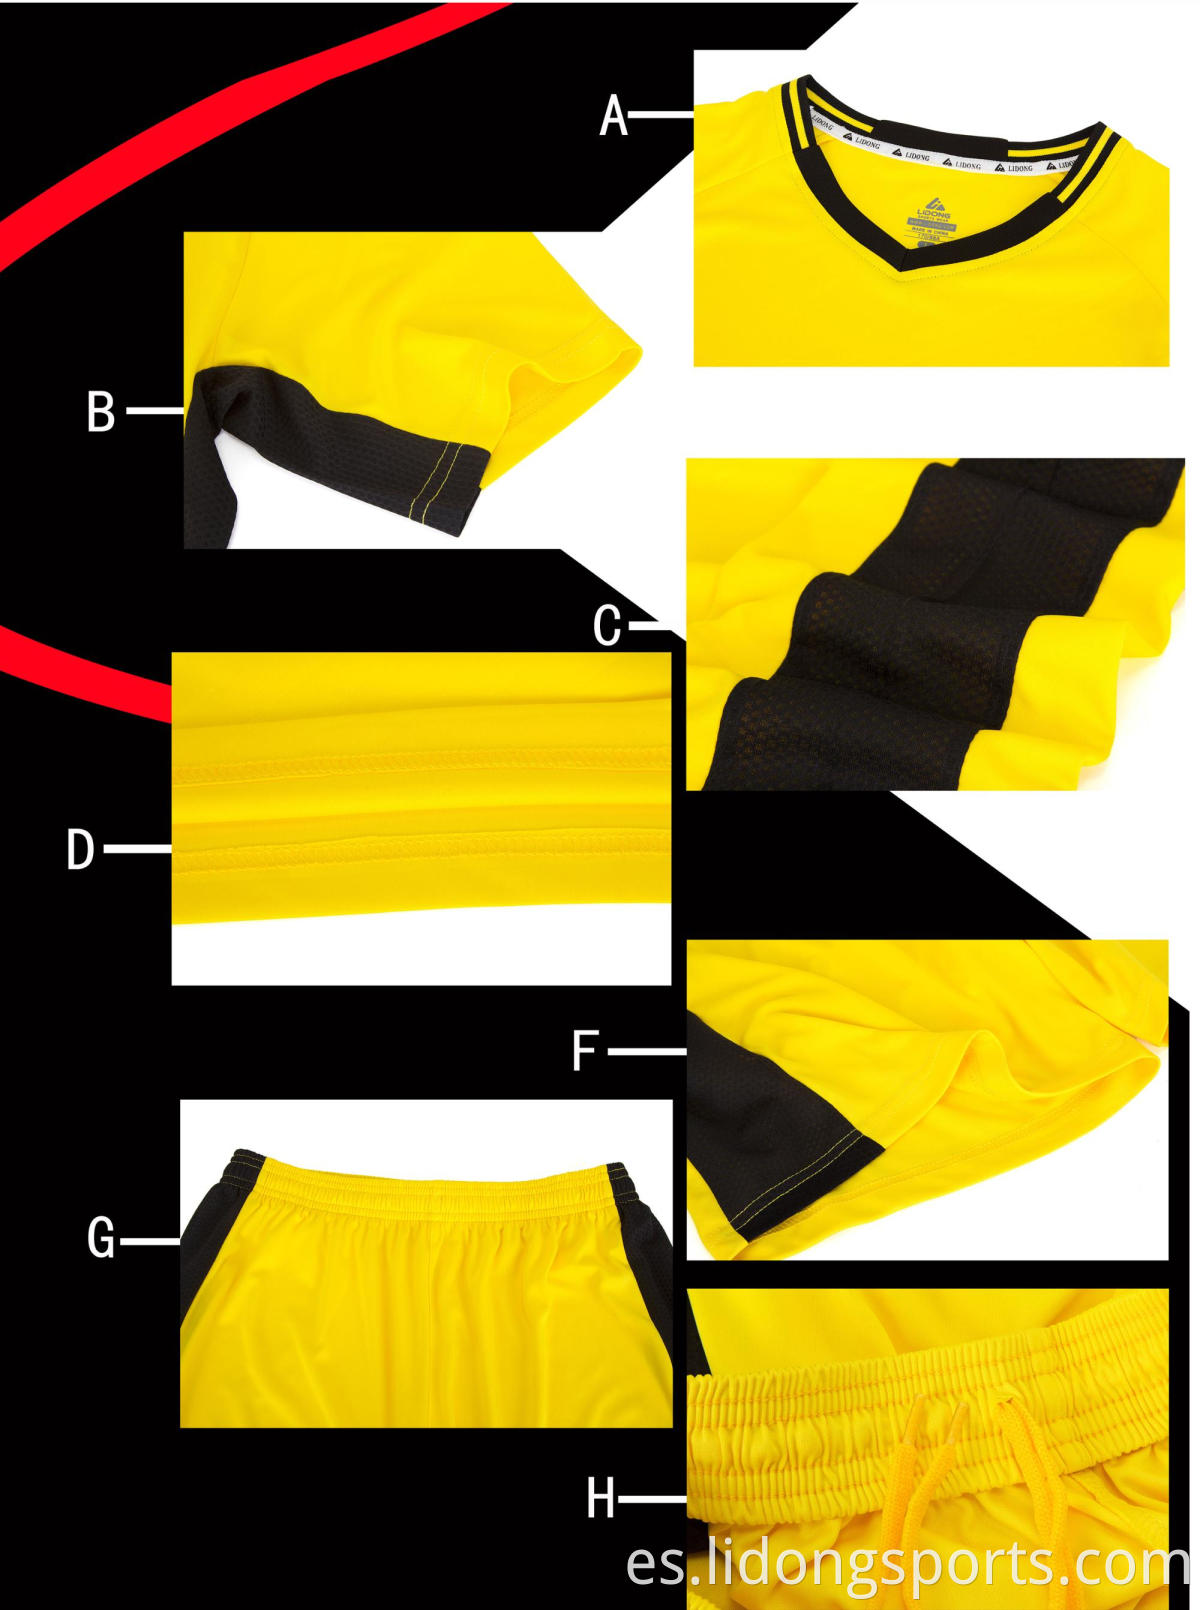 2021 Set de camisetas de fútbol y camisetas de fútbol de sublimación personalizada